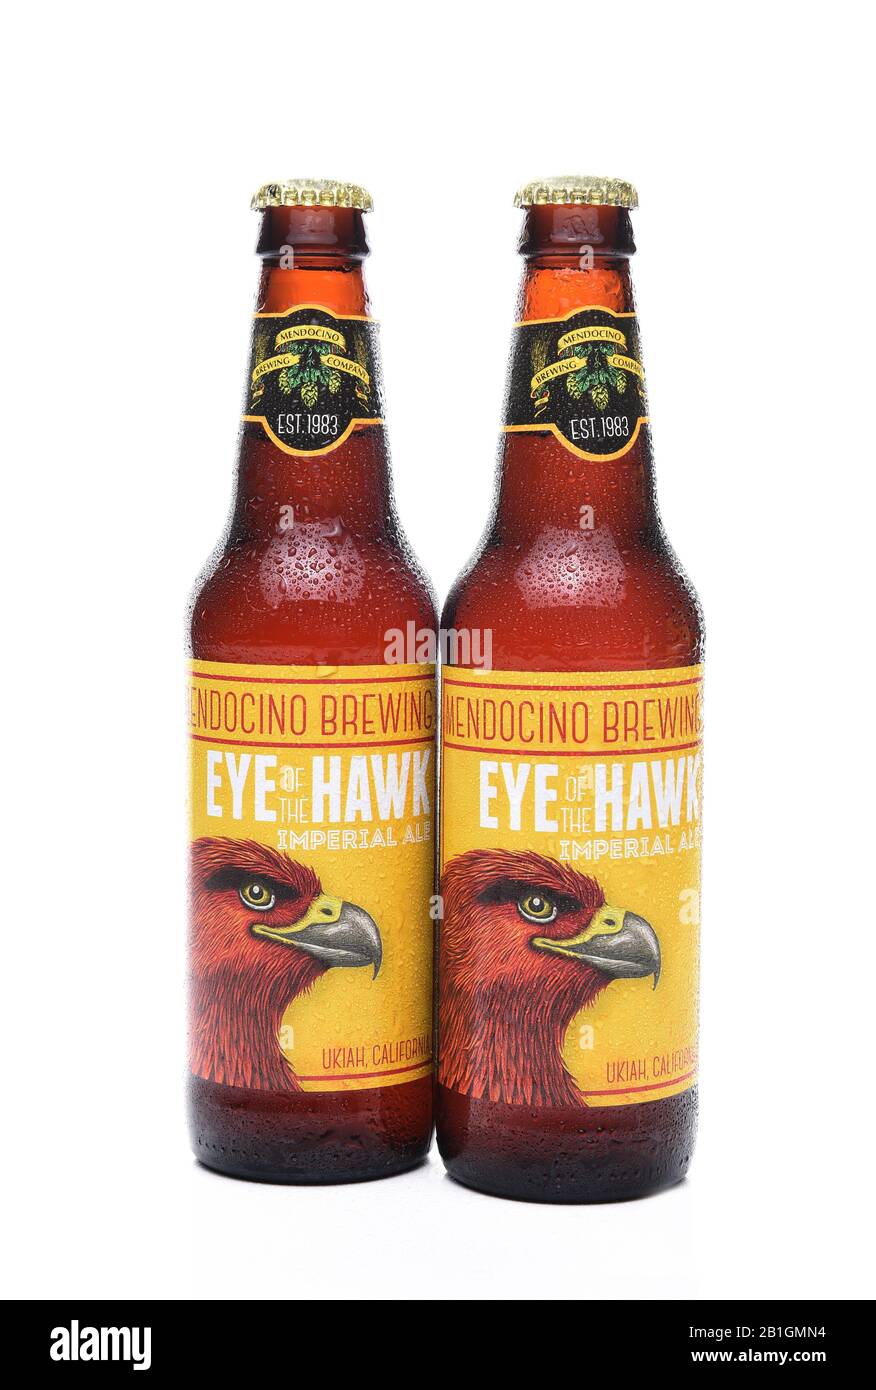 Irvine, CA - 30 DE SEPTIEMBRE de 2017: Ojo del Hawk Imperial Ale. De La Compañía Mendocino Brewing, En Ukiah, California. Foto de stock